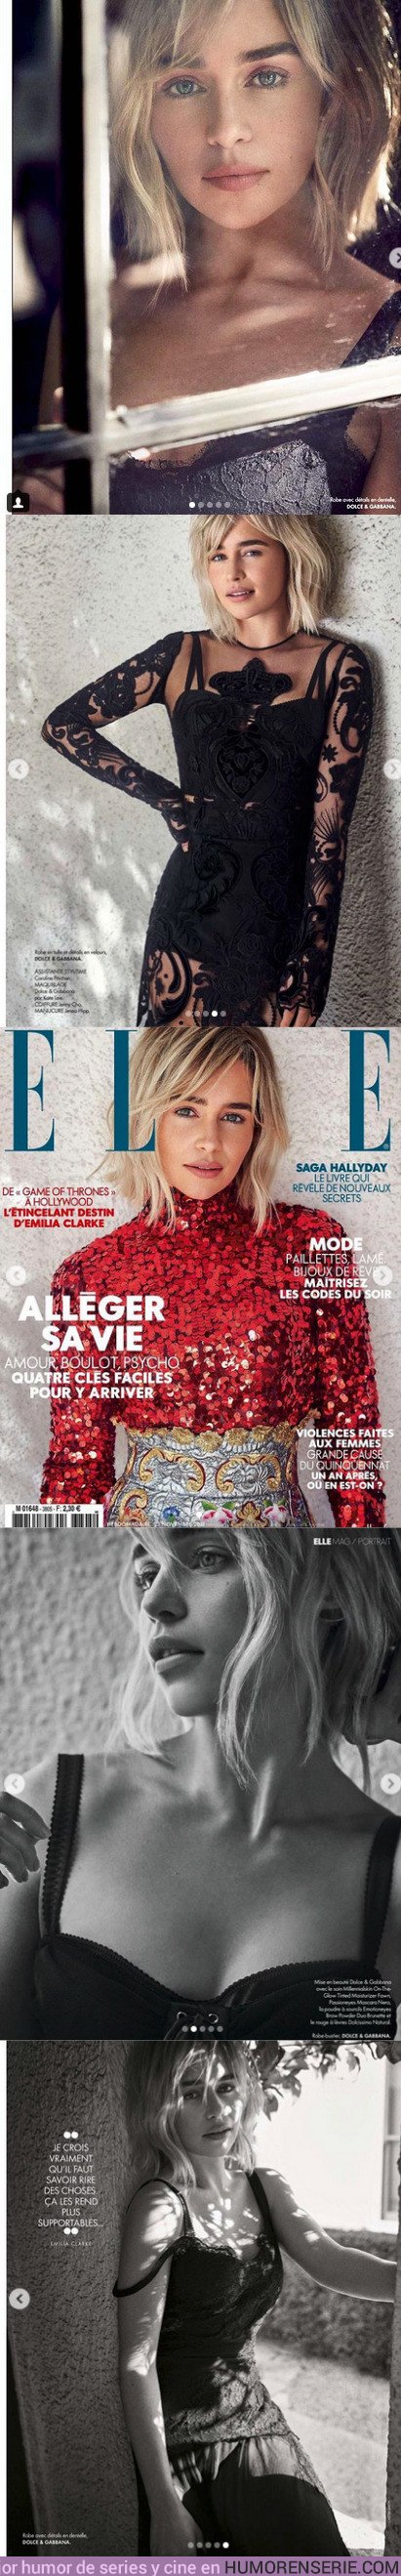 31604 - Las fotos de Emilia Clarke para la revista Elle. ¿Se puedes ser más bella?